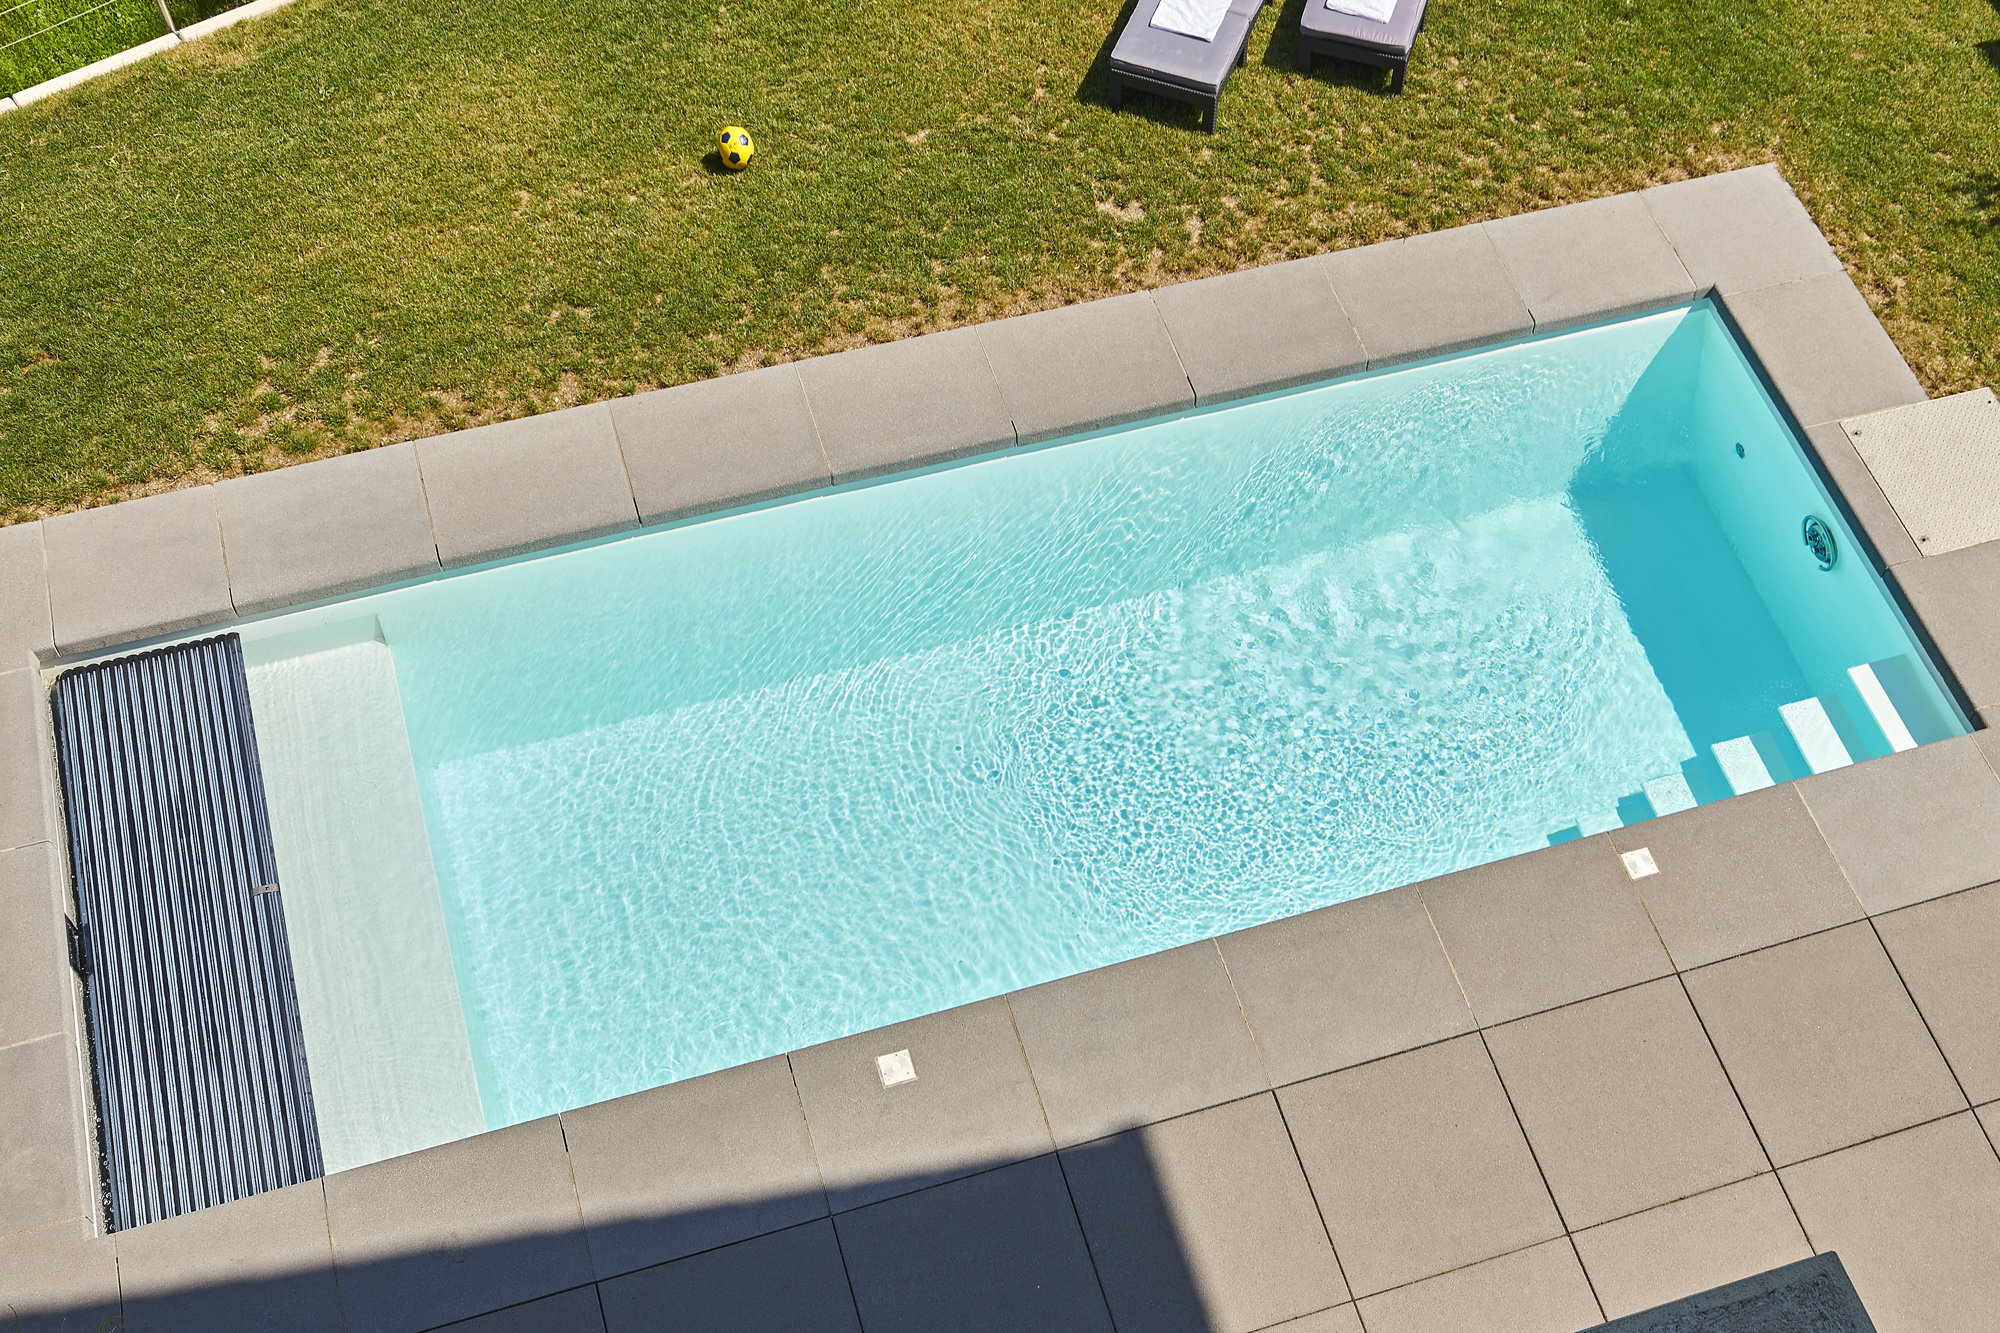 Zwembad met ligbank en zonne-rolluikafdekking in wit